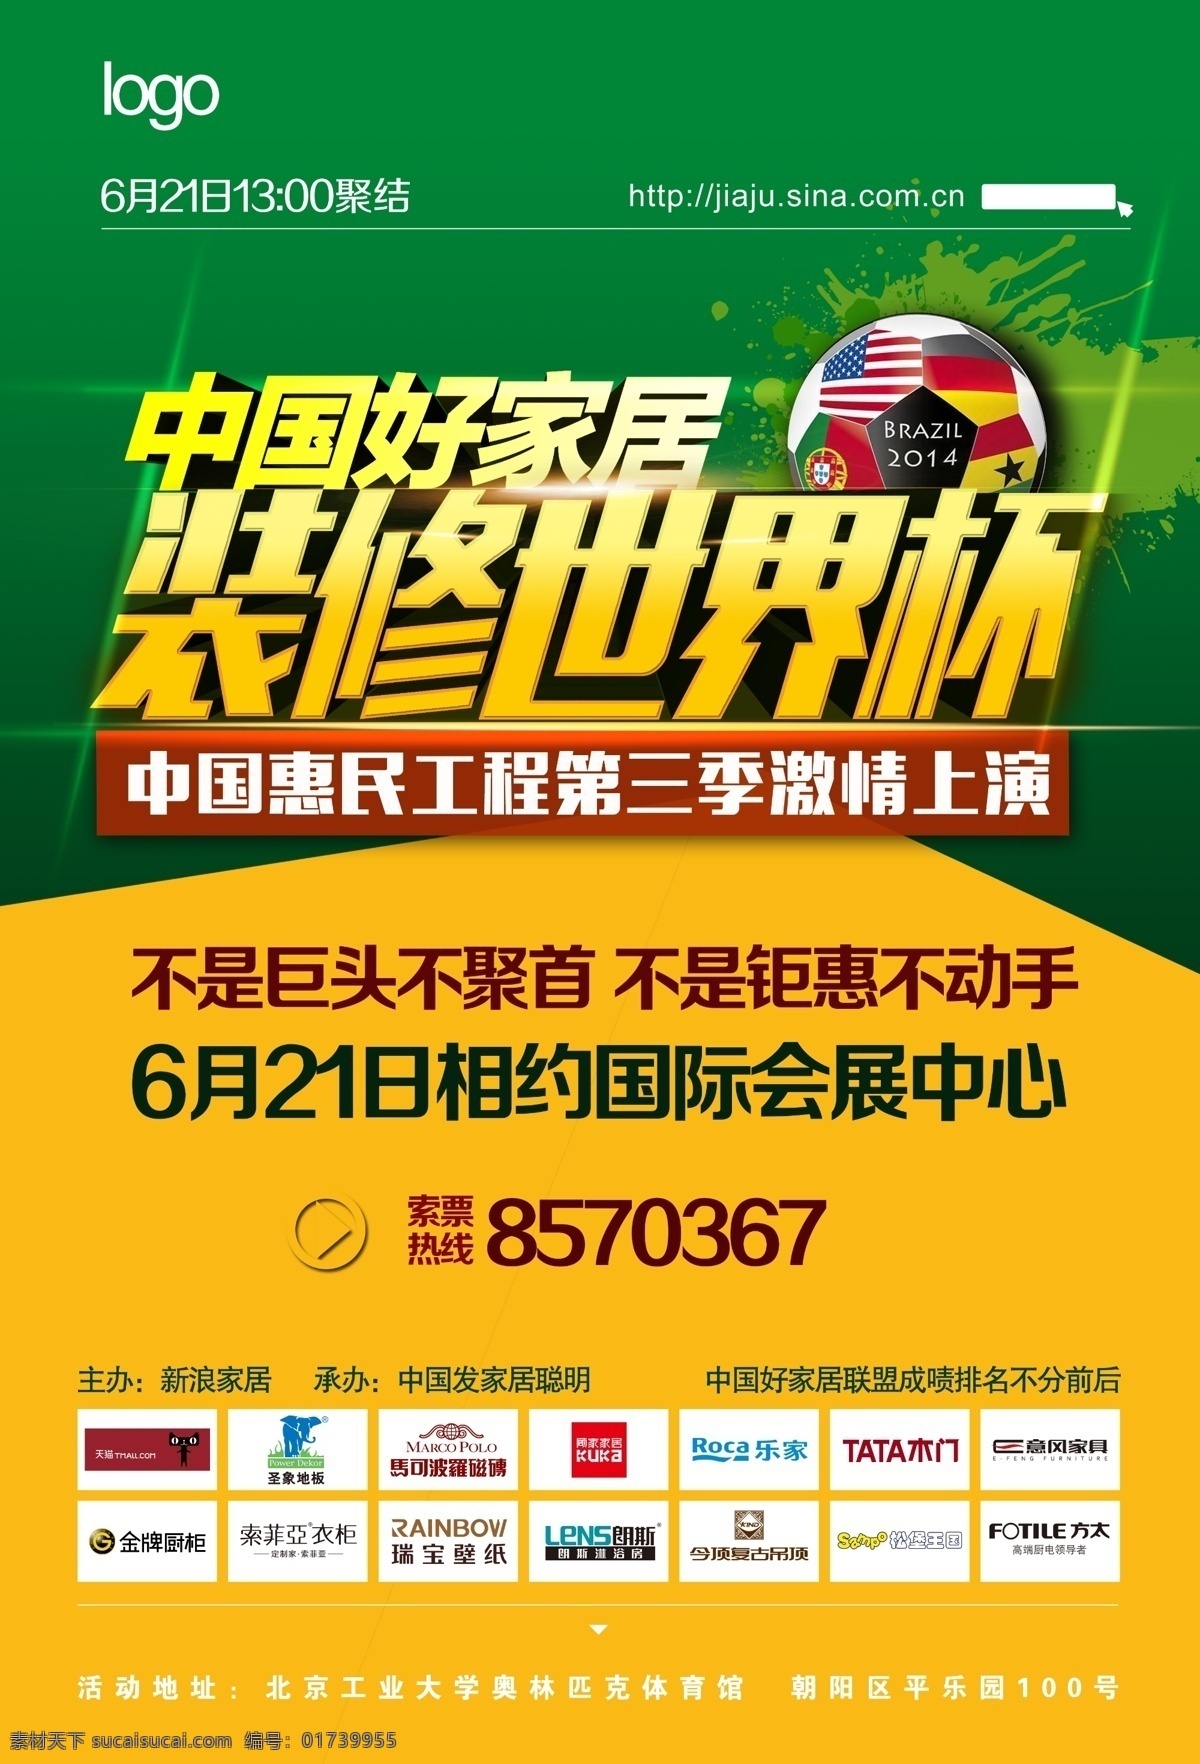 中国 好 家居 活动 海报 分层 巴西世界杯 全城钜惠 世界各国国旗 激情上演 其他海报设计